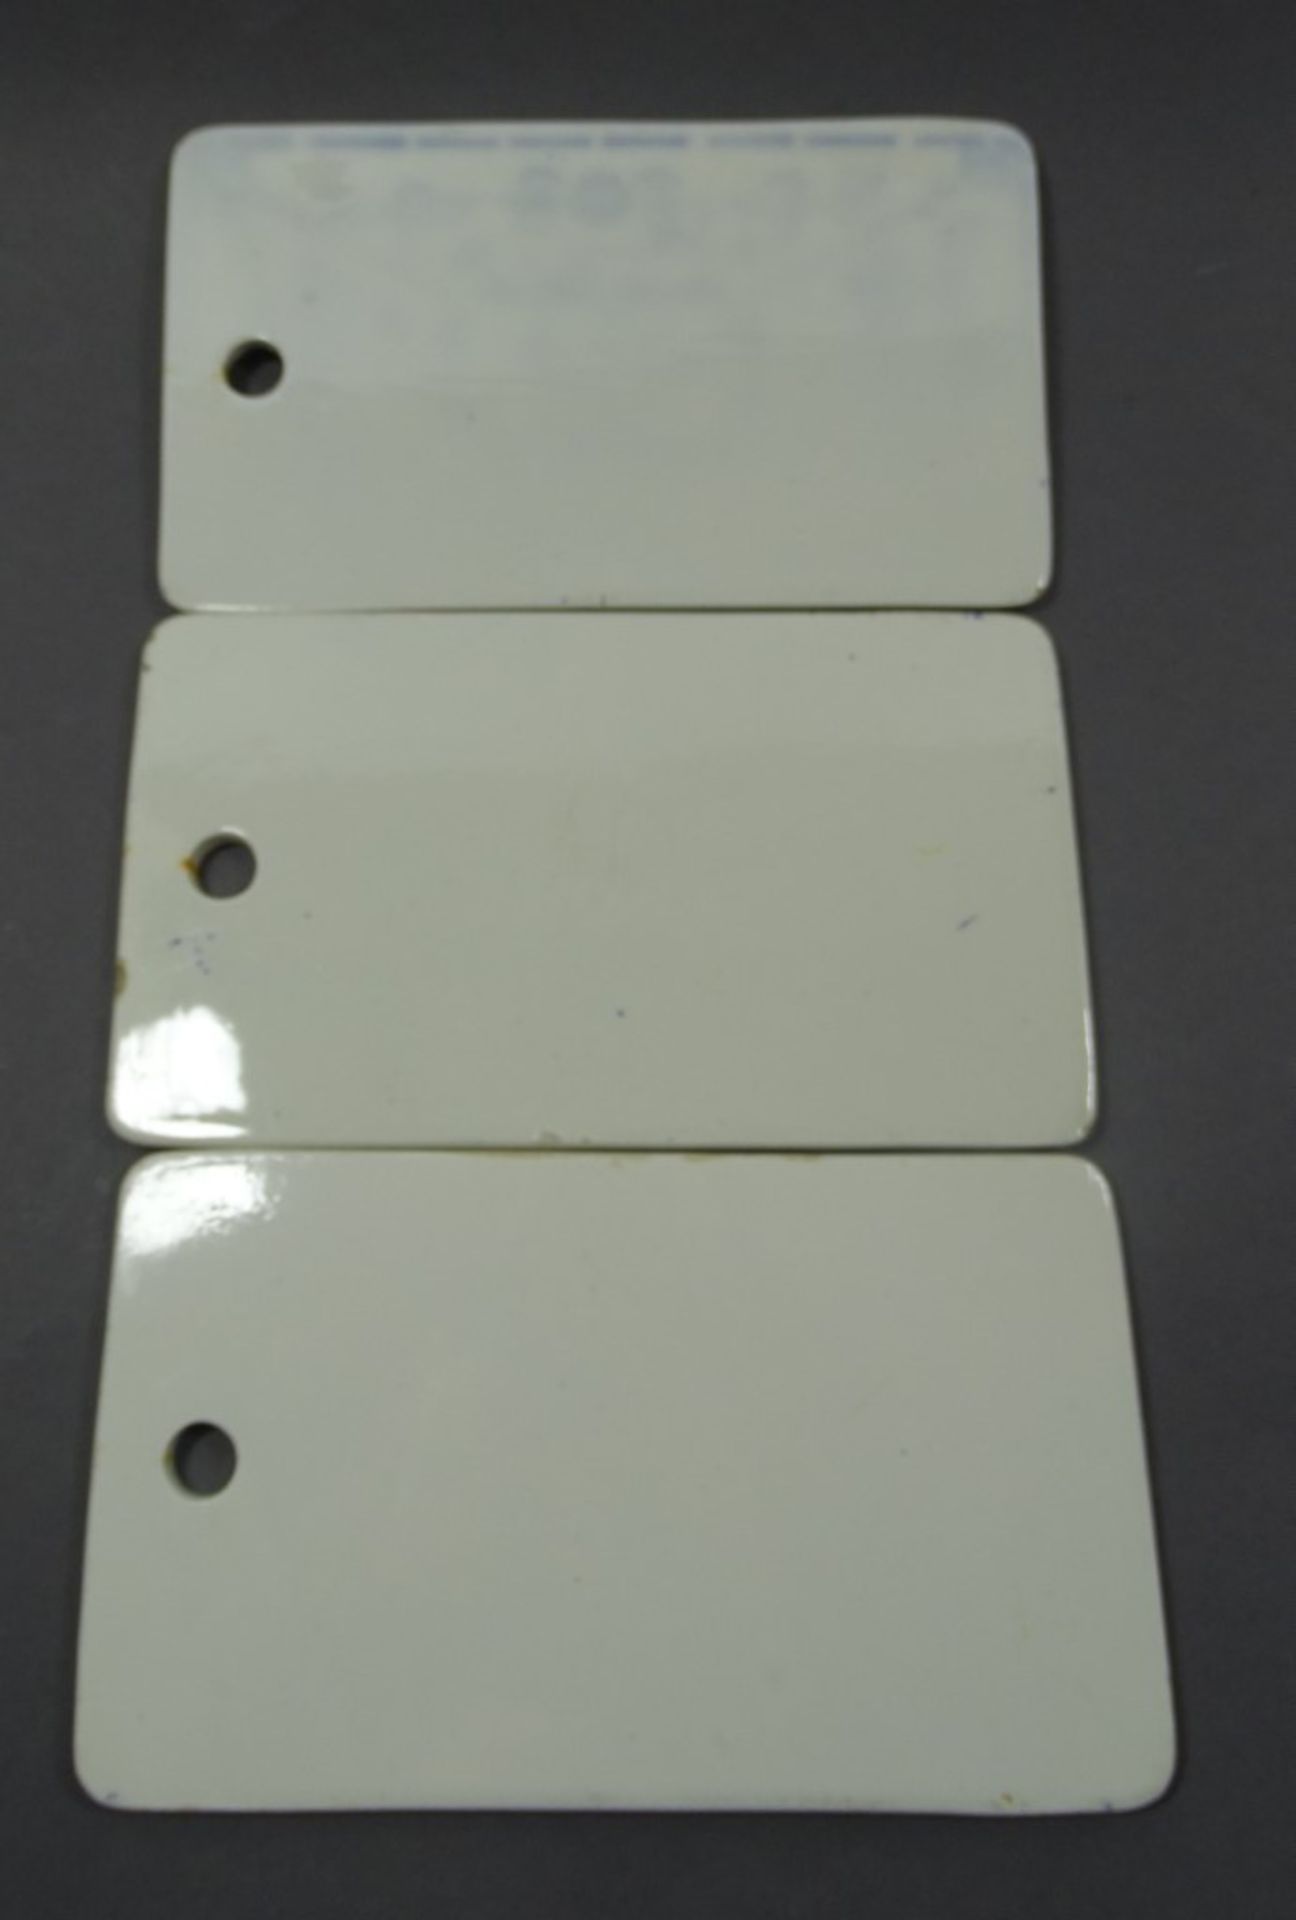 3 Porzellanbrettchen mit Strohblumenmuster, 20x11,7 cm, mit Altersspuren, Kratzer, kleine Chips - Bild 2 aus 2